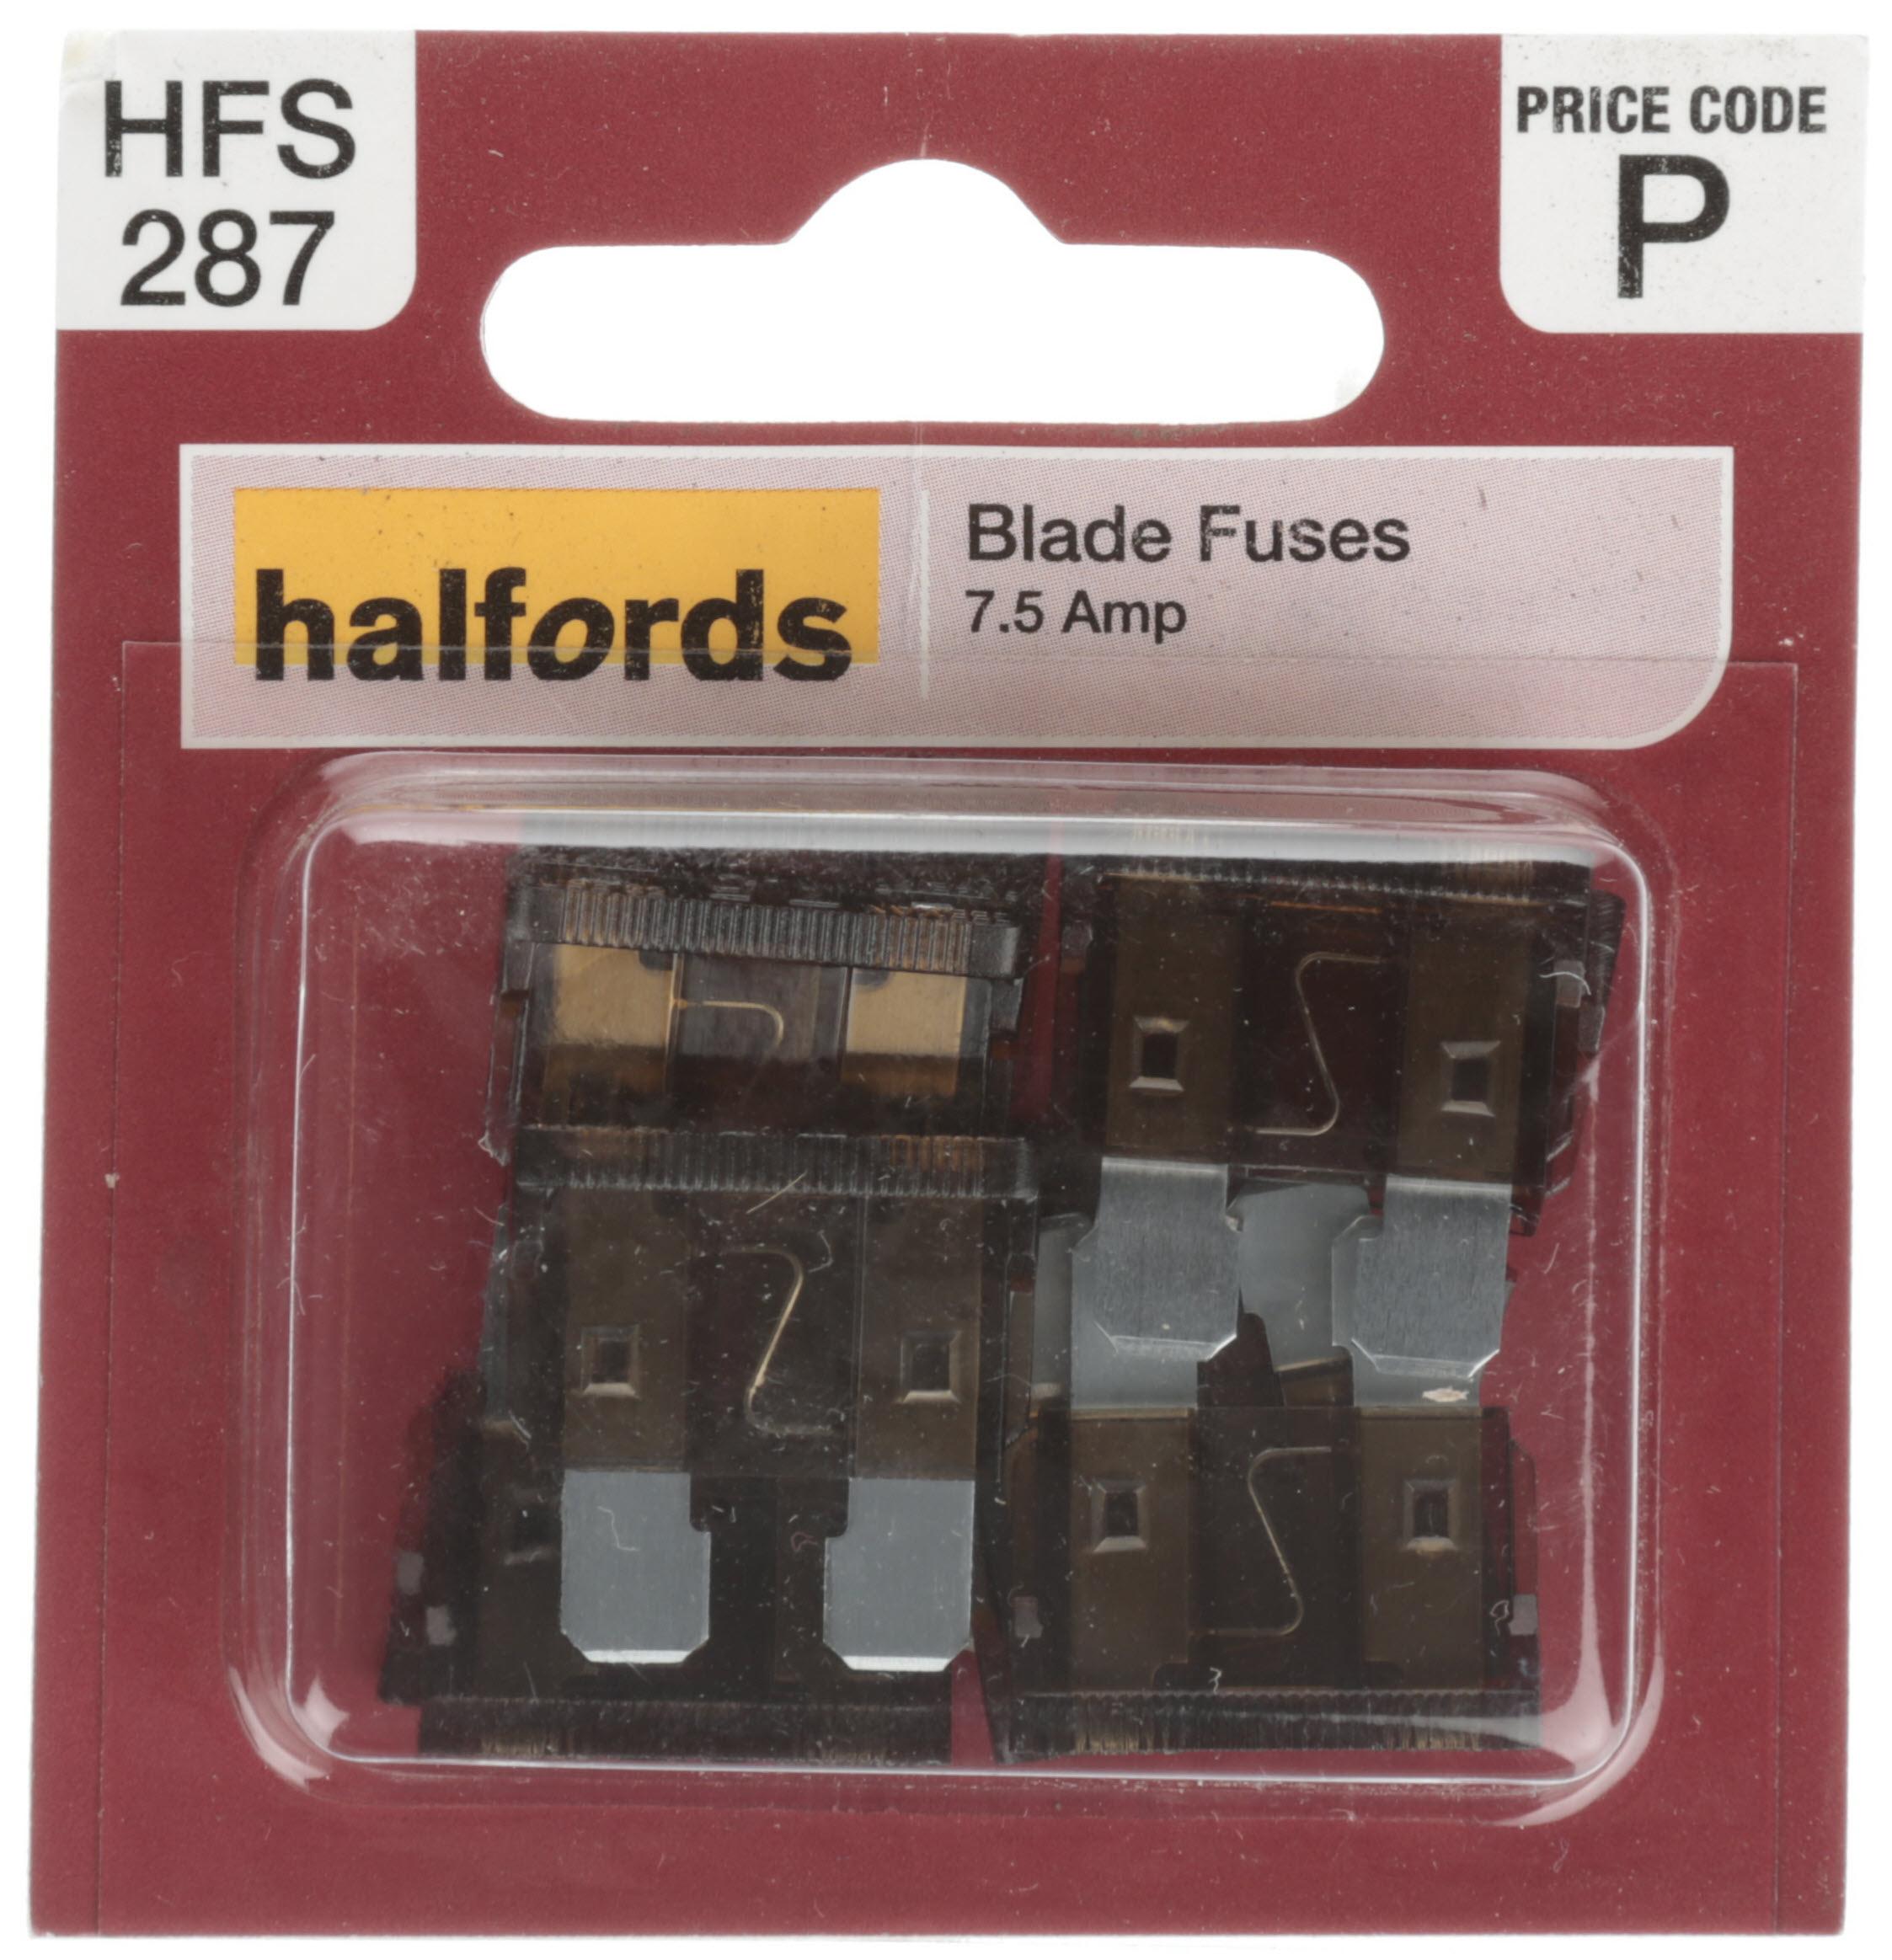 Halfords Blade Fuses 7.5 Amp (Hfs287)